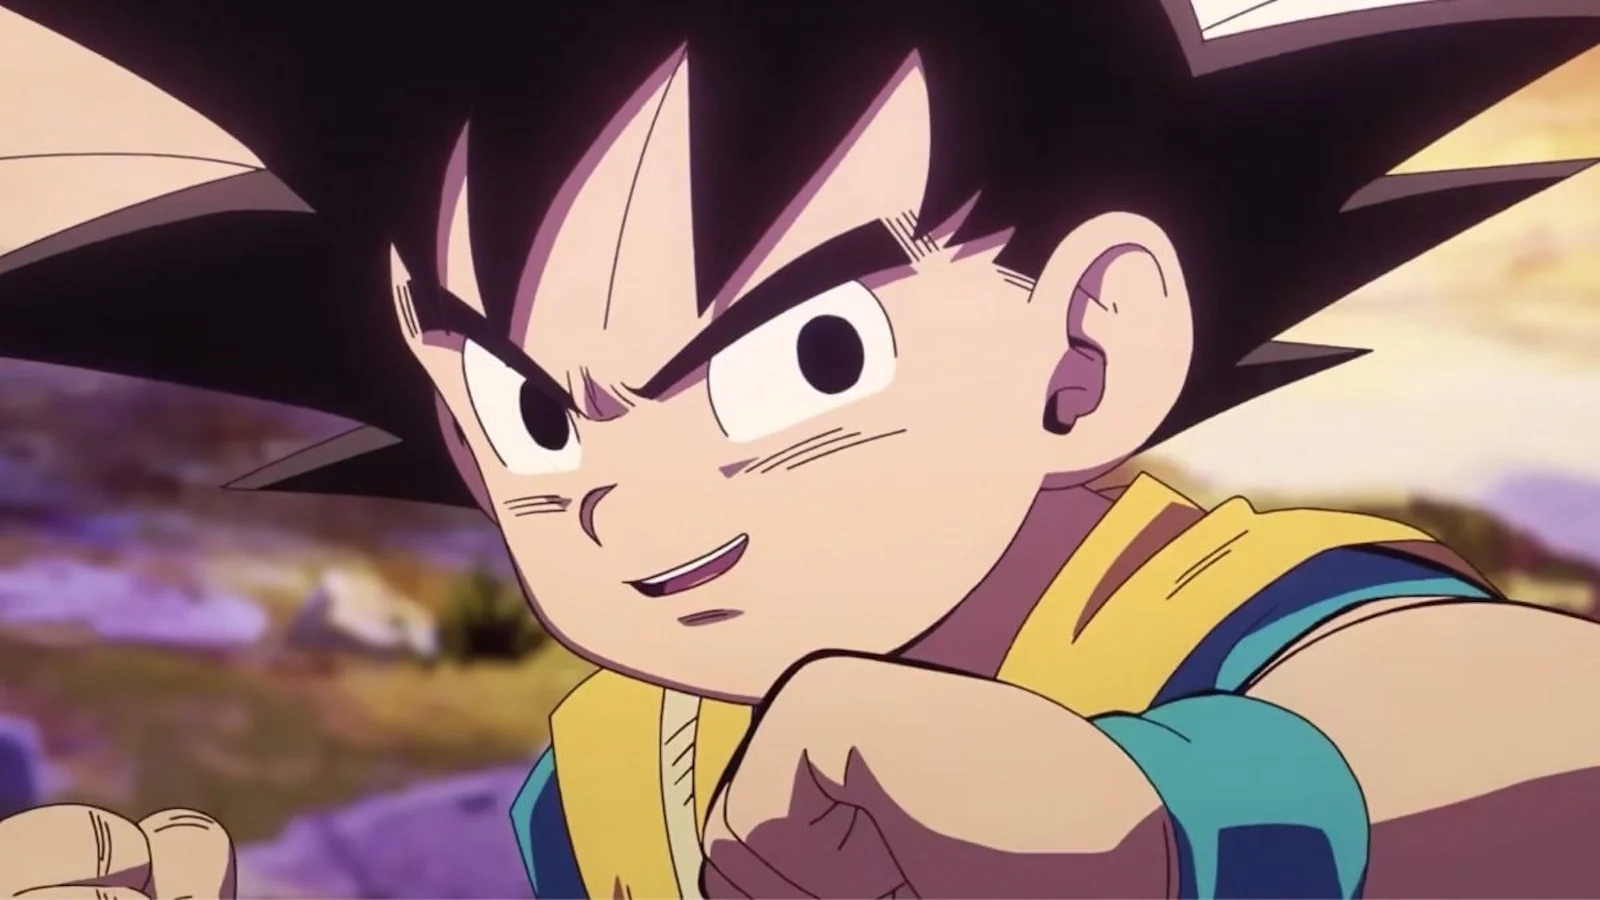 Dragon Ball: su Amazon una splendida figure Banpresto del piccolo Goku è attualmente in sconto